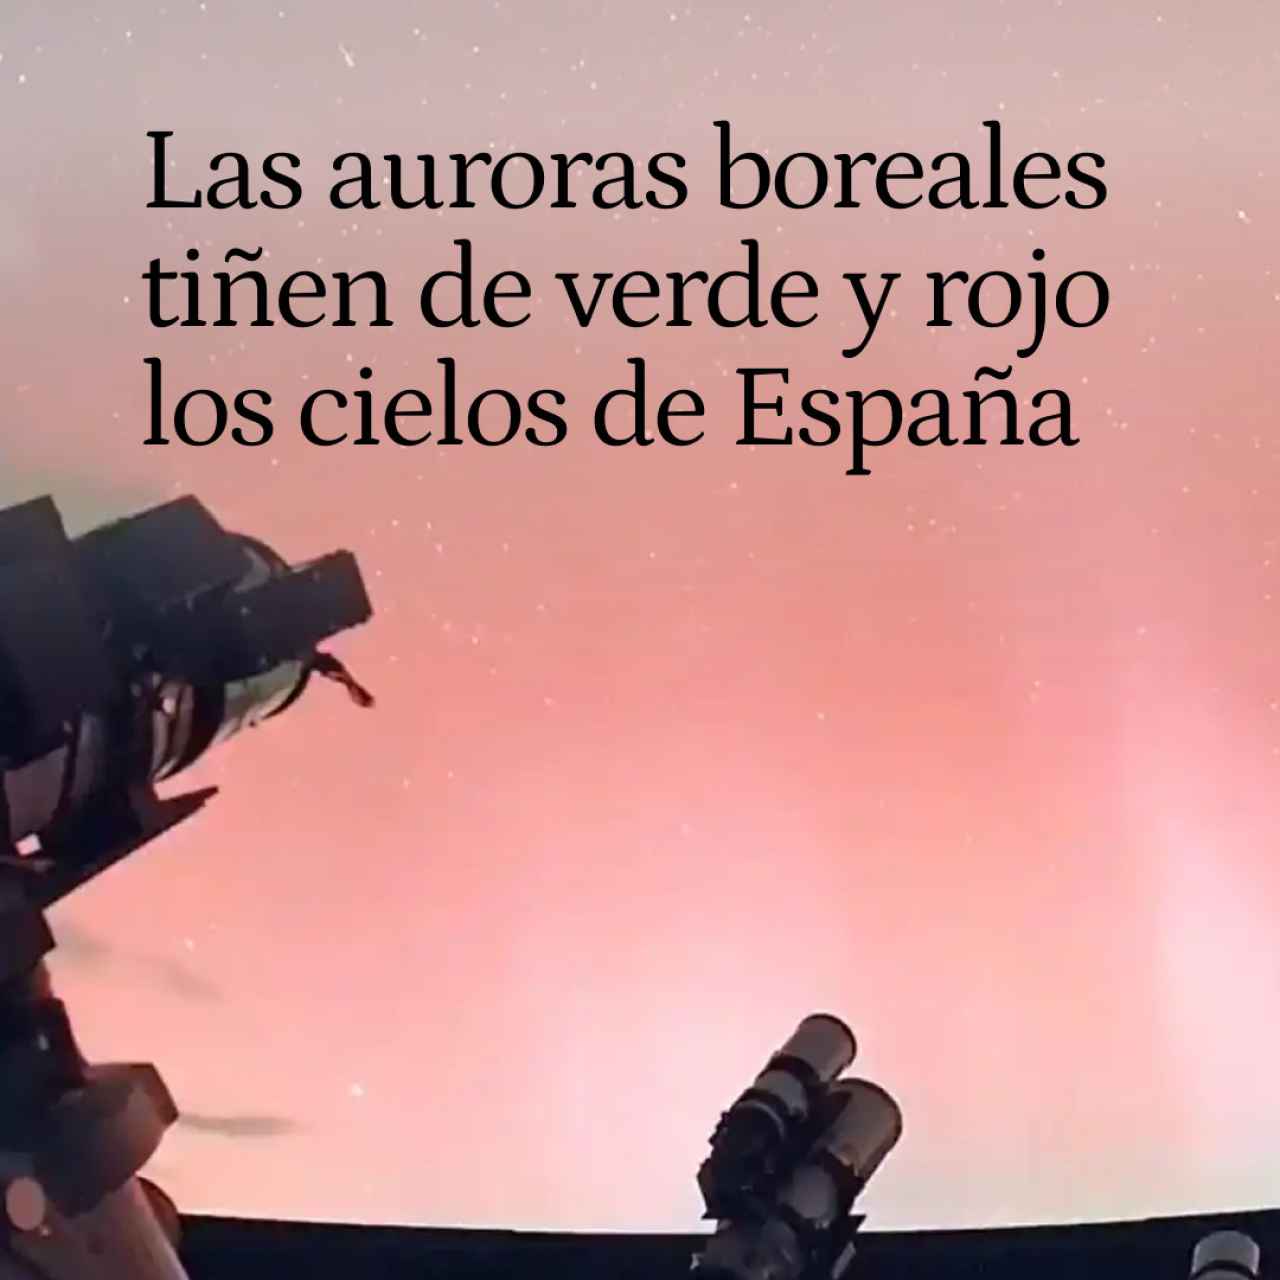 Las auroras boreales tiñen de verde y rojo los cielos de España tras fuertes erupciones solares